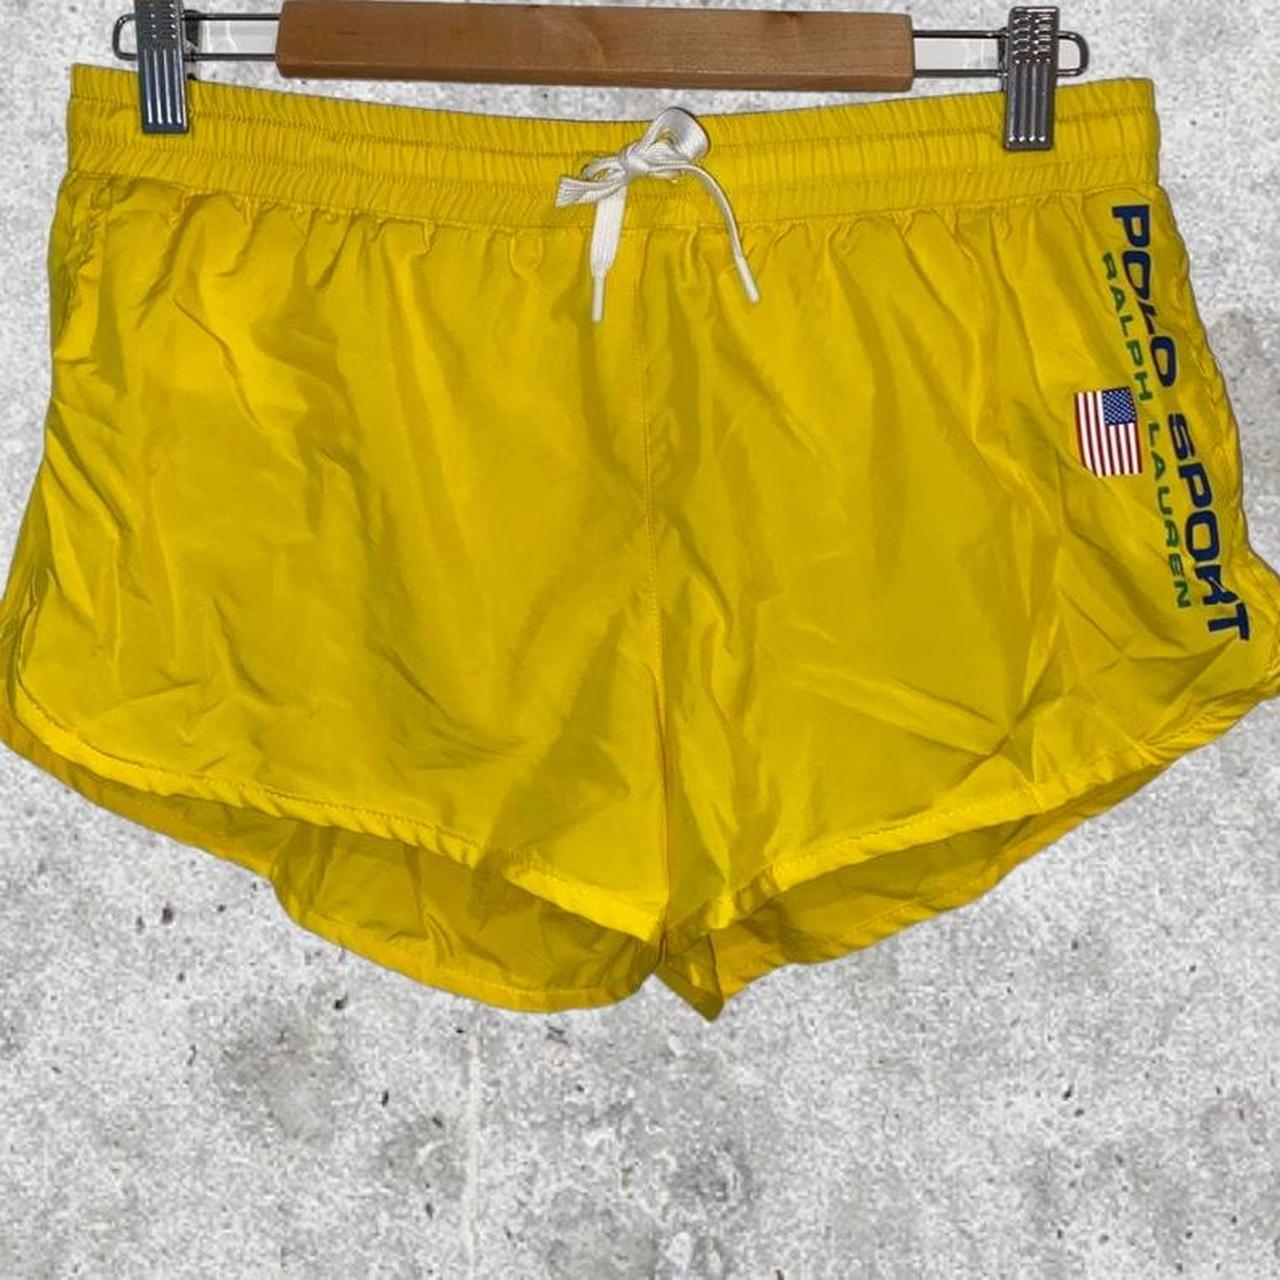 Limited run Polo Ralph Lauren ‘Polo Sport’ shorts... - Depop